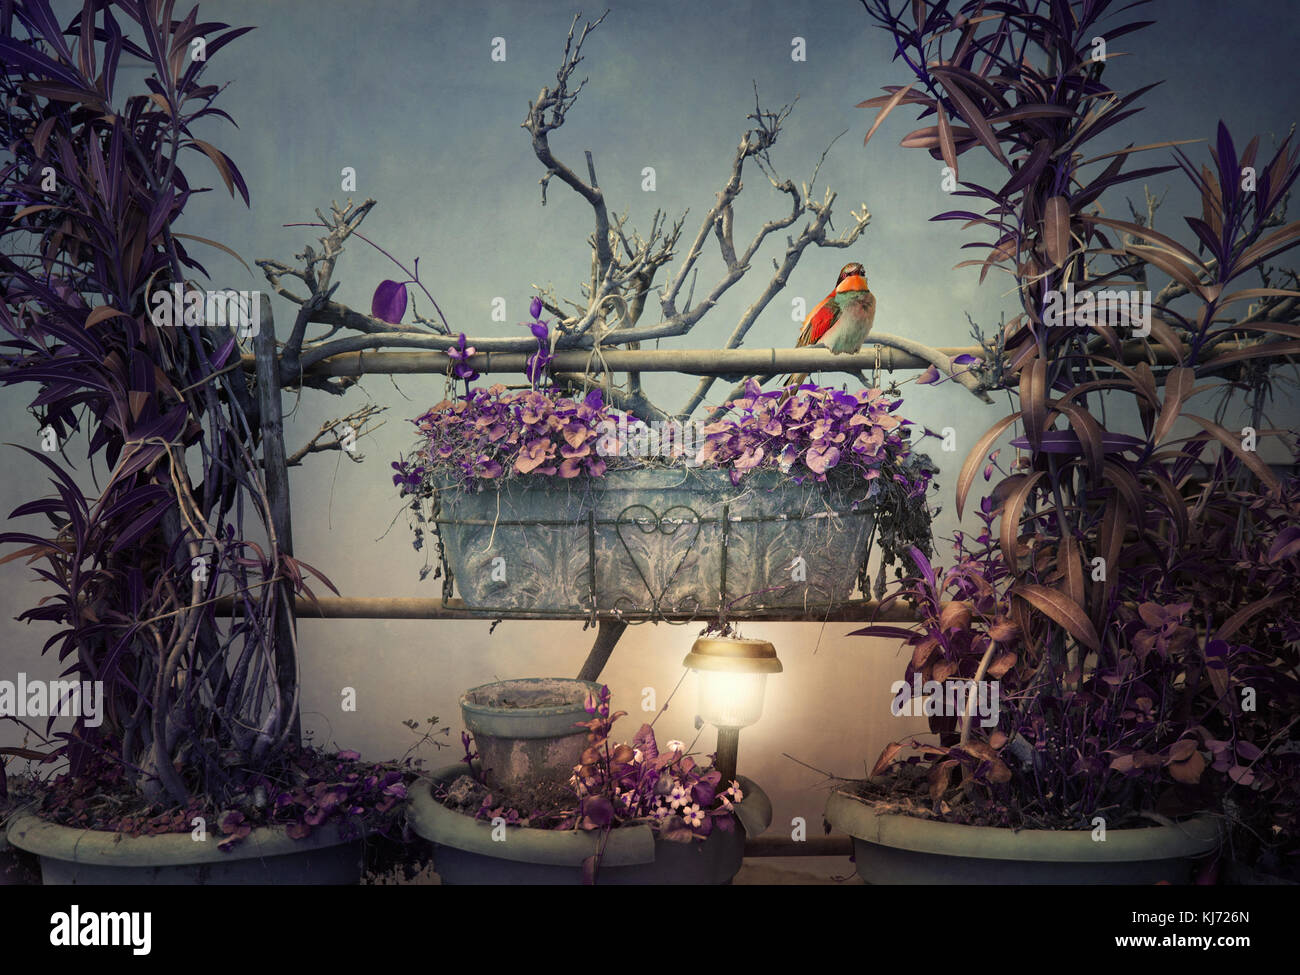 Belle image artistique représentant une composition de plantes branches et un petit oiseau dans un cadre irréel Banque D'Images